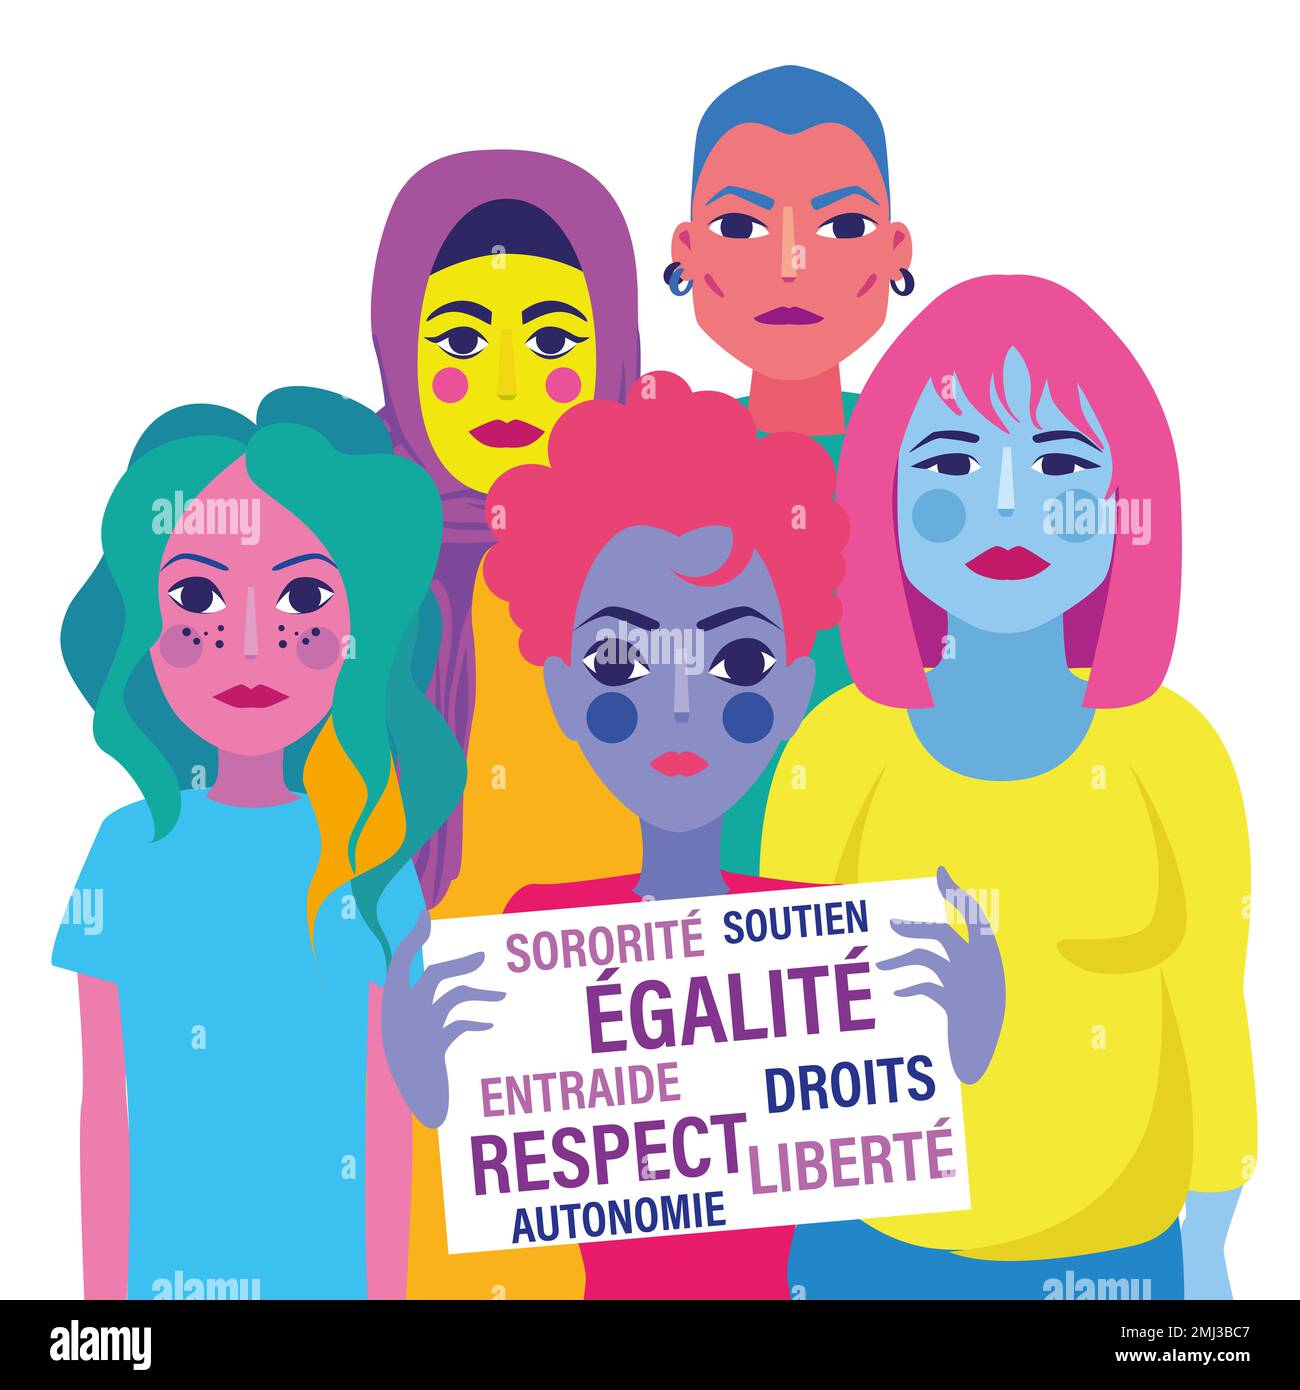 Illustration des droits des femmes - thème de la bannière de conception inclus Banque D'Images